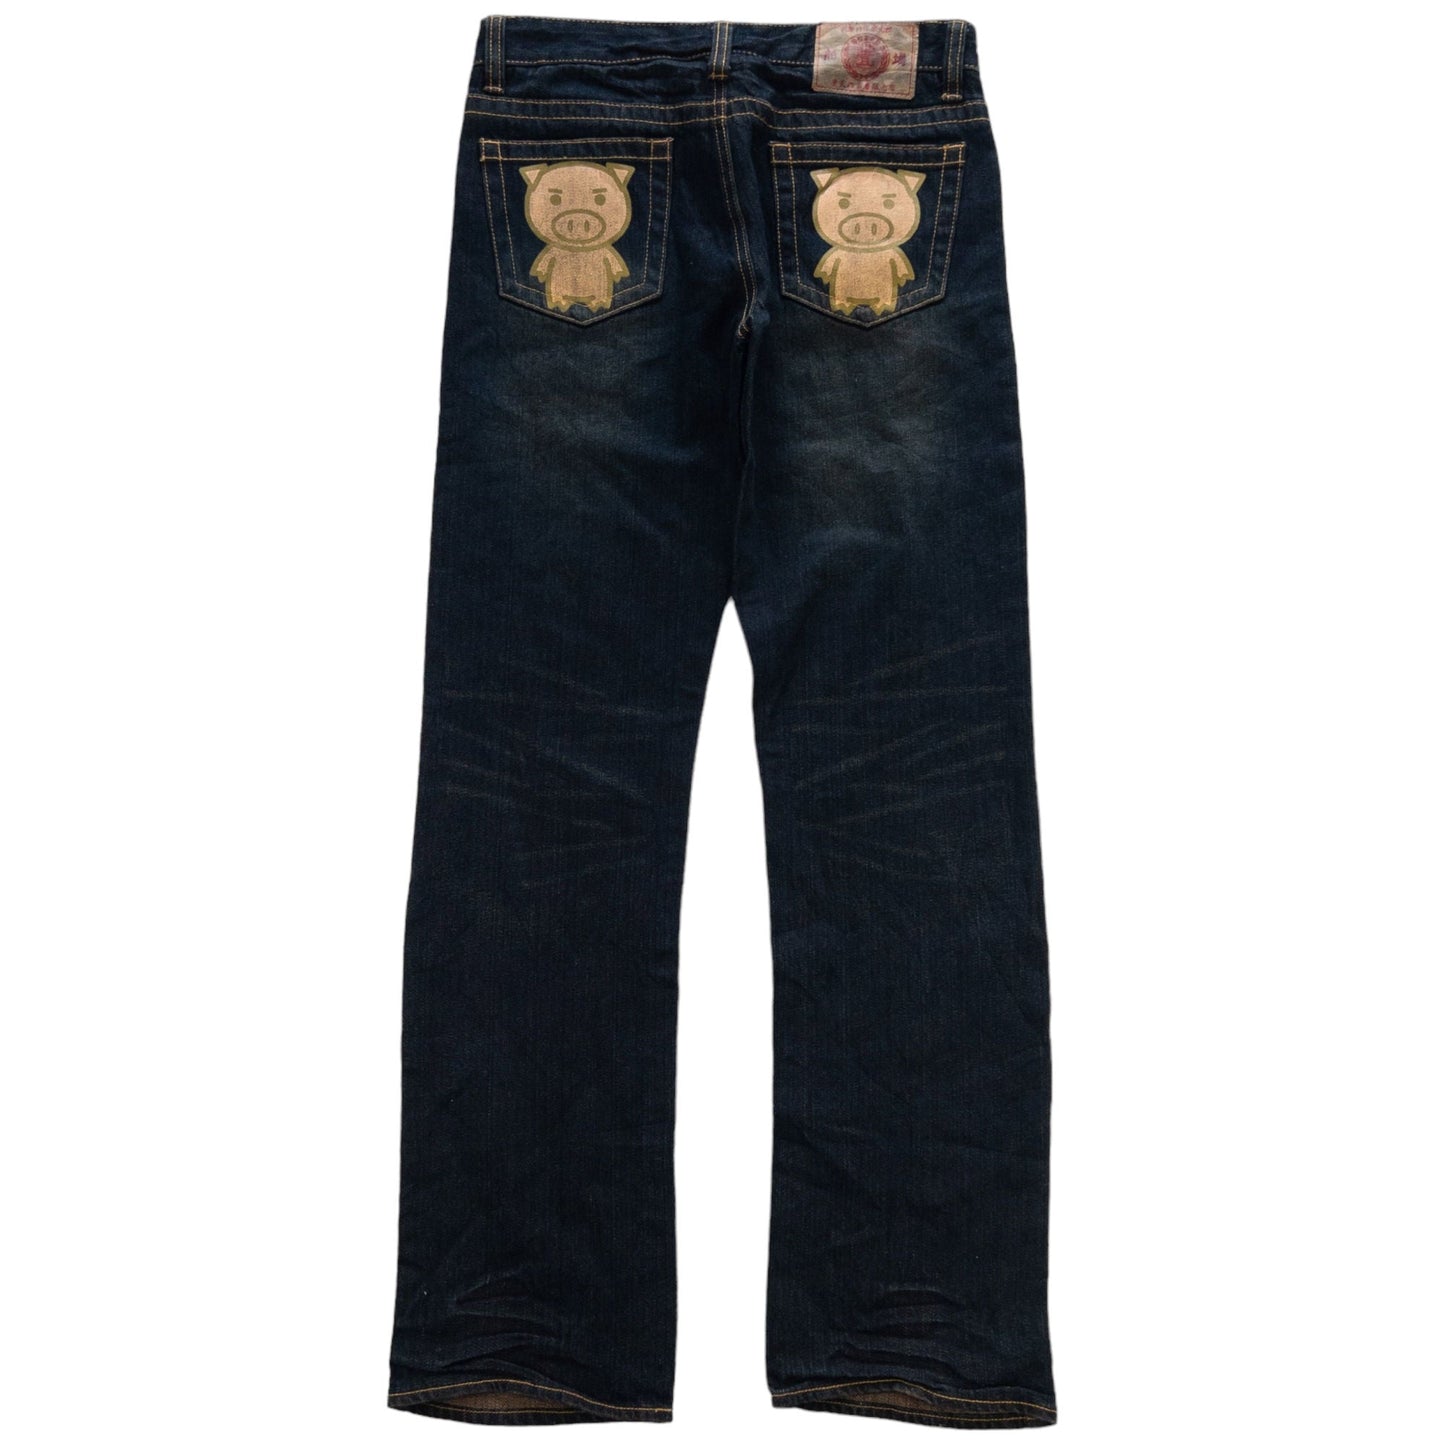 Vintage Pig Japanese Denim Jeans Size W29